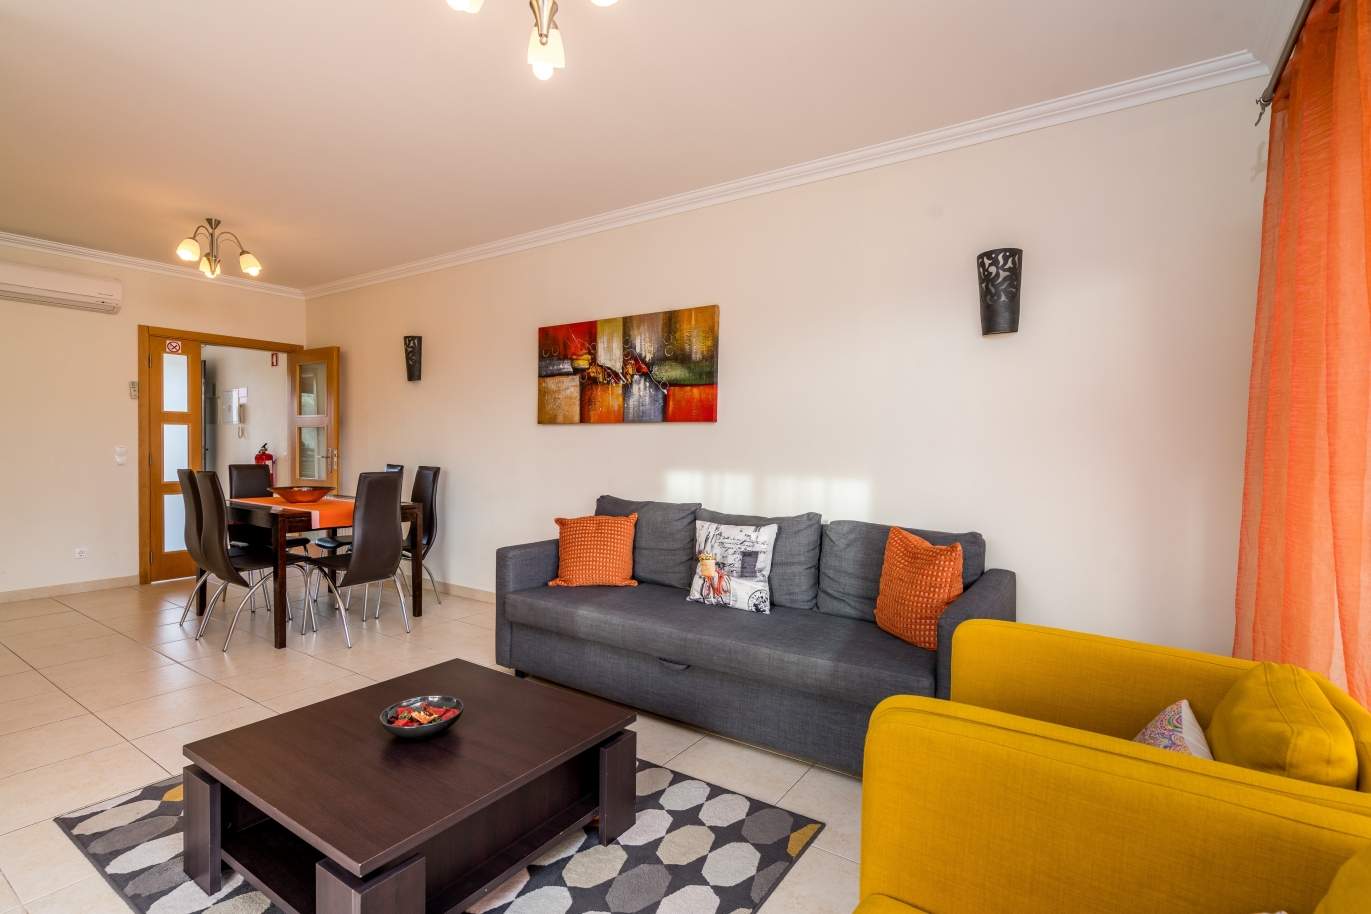 Sale of villa in private condominium in Albufeira, Algarve, Portugal_126884